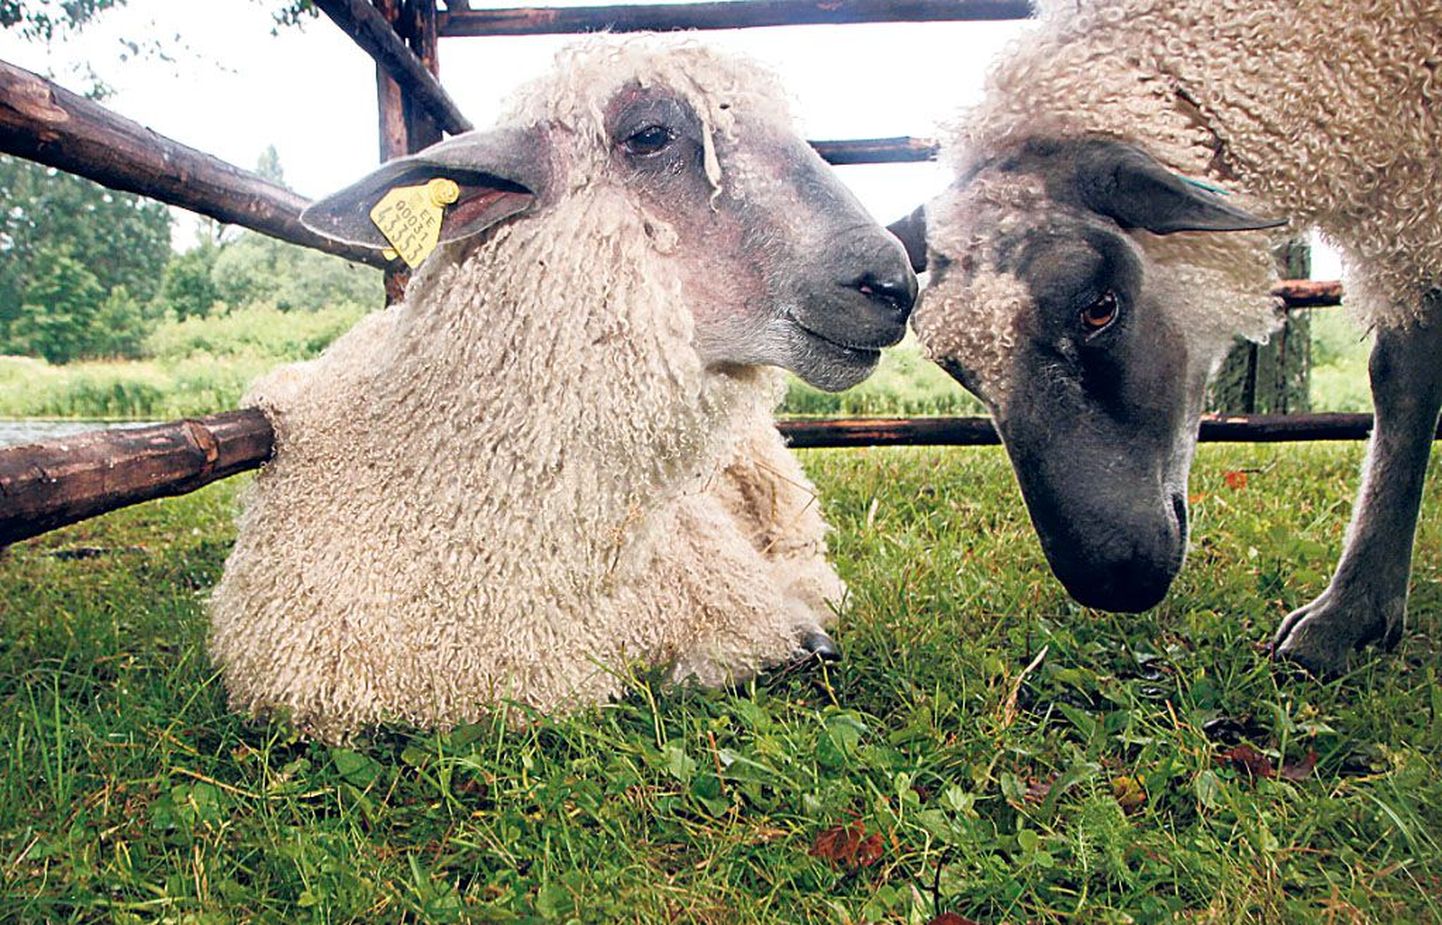 Teises kvartalis kasvas koduriigis 105 300 lammast ja kitse. Nende kasvatajad on ühinenud seltsi, millel on 166 liiget. Tavakohasel igasuvisel kokkusaamisel Kurgja talumuuseumis näidatakse oma kaunimaid loomi, vahetatakse villa lõnga vastu, pakutakse kitse- ja lambalihatooteid ning aetakse omavahel erialajuttu.